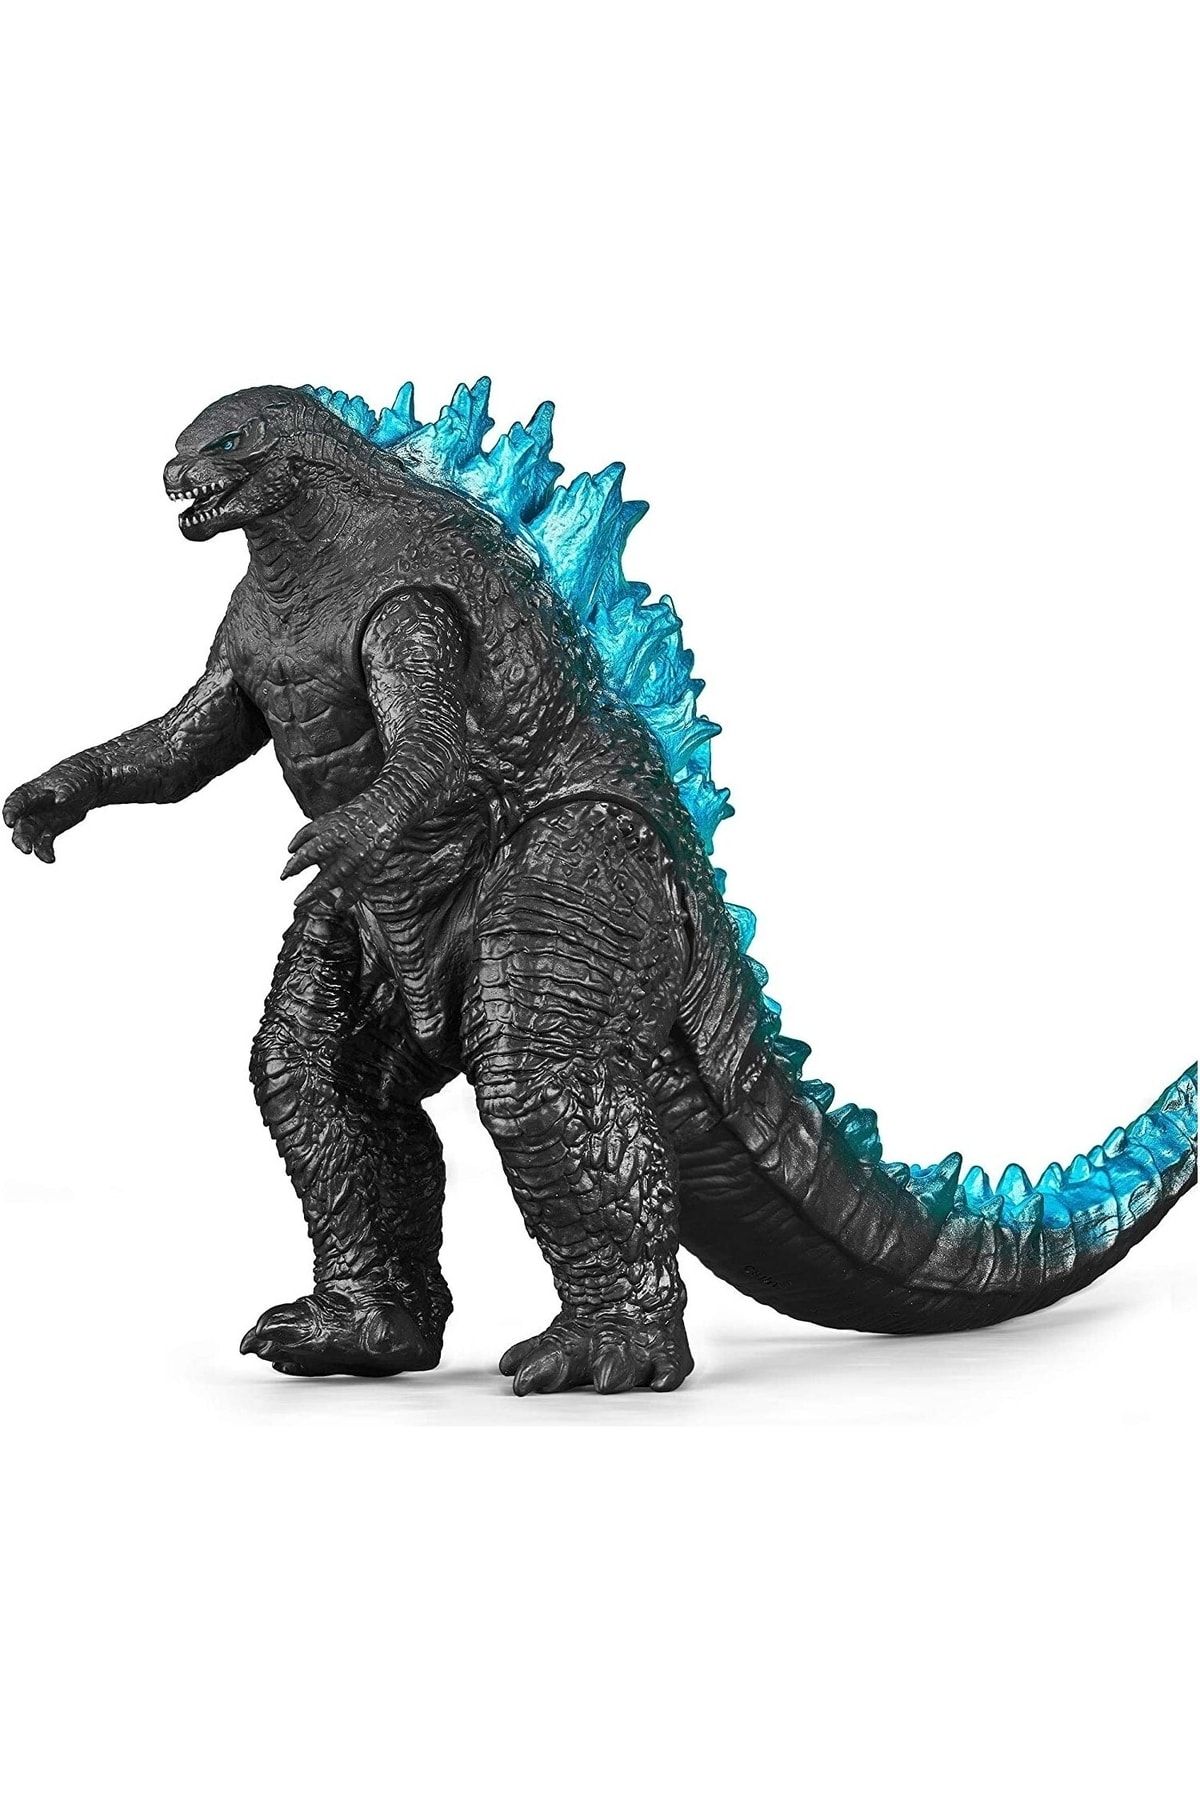 Hesaplı Dükkan Godzilla Sesli Trex Figür Dinozor